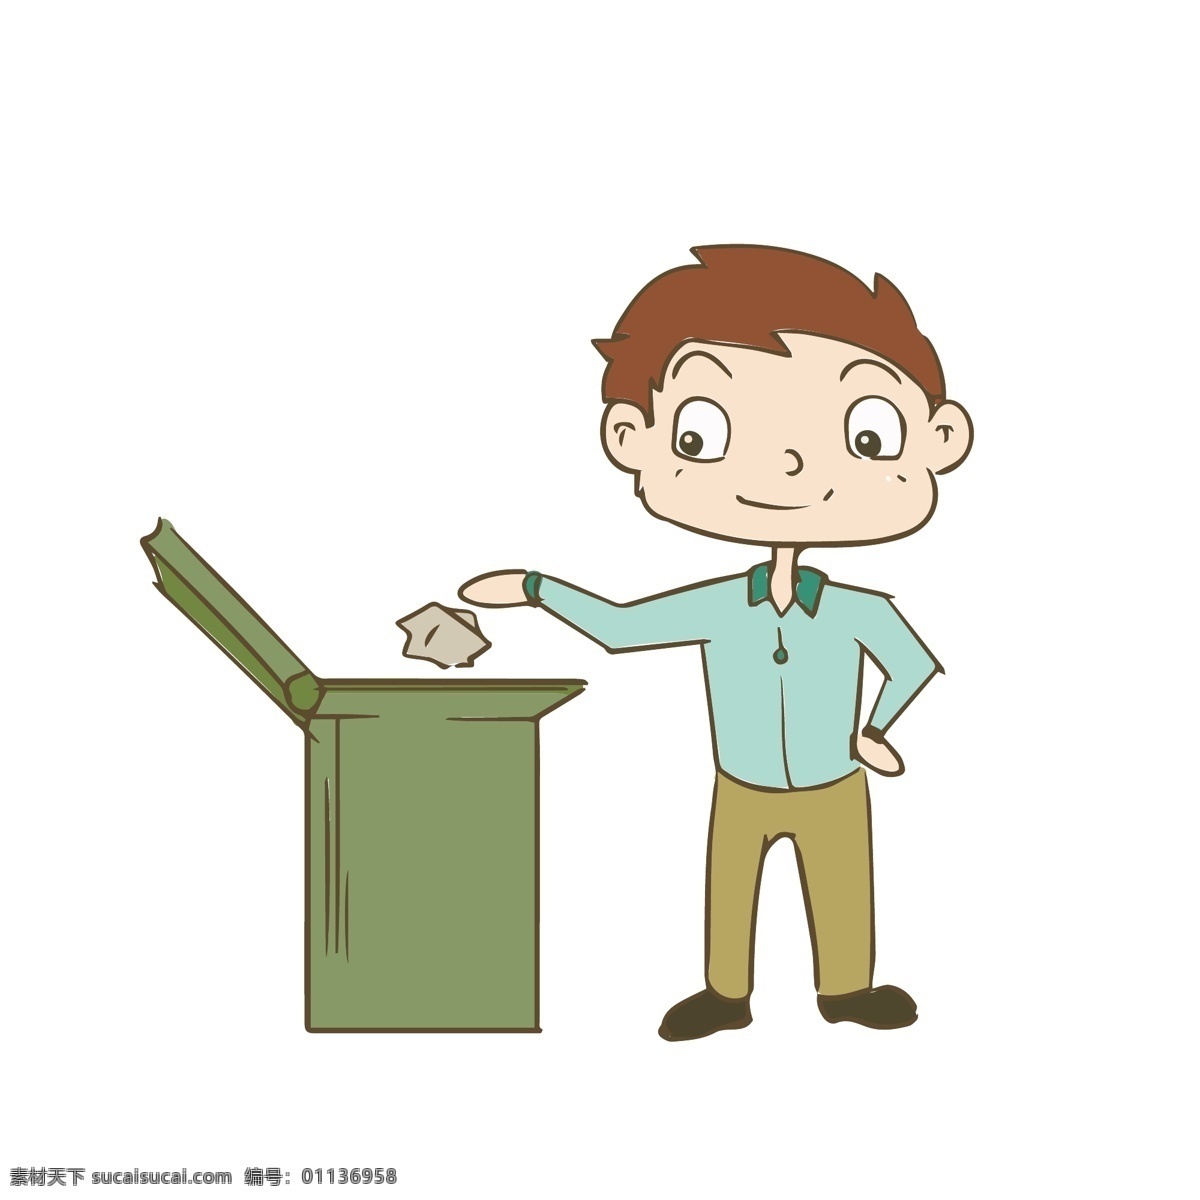 简约 扁平 可爱 卡通 温馨 提示 人物 矢量 元素 请勿 乱扔 垃圾 垃圾桶